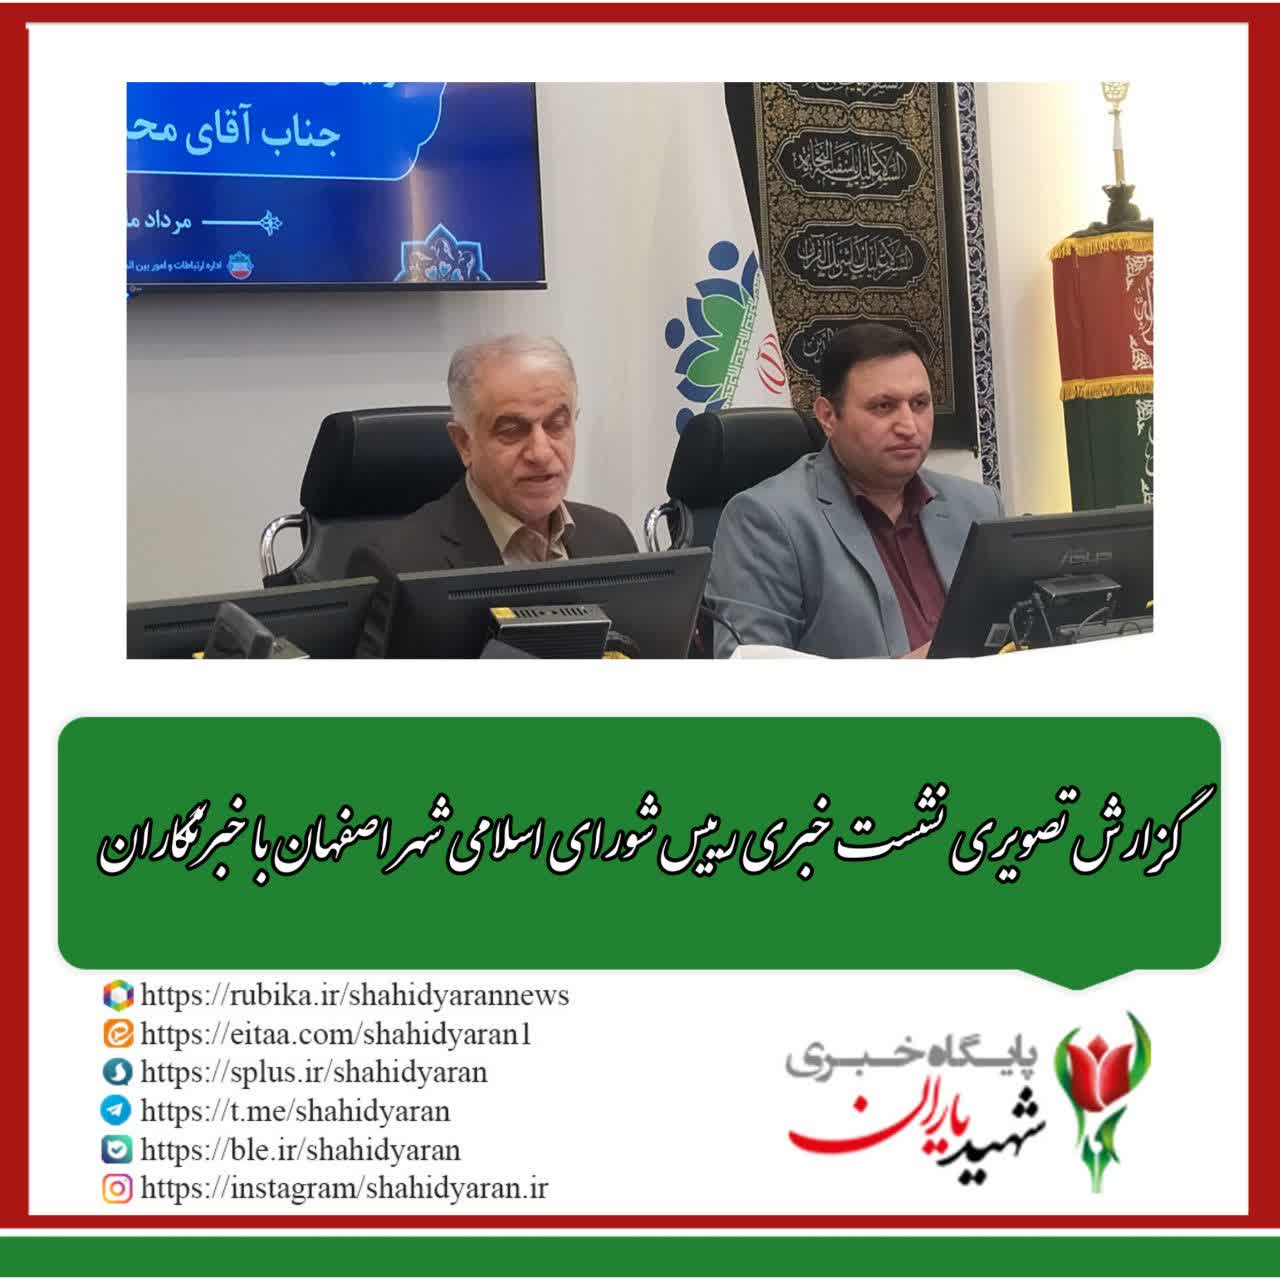 گزارش تصویری نشست خبری رییس شورای اسلامی شهر اصفهان با خبرنگاران